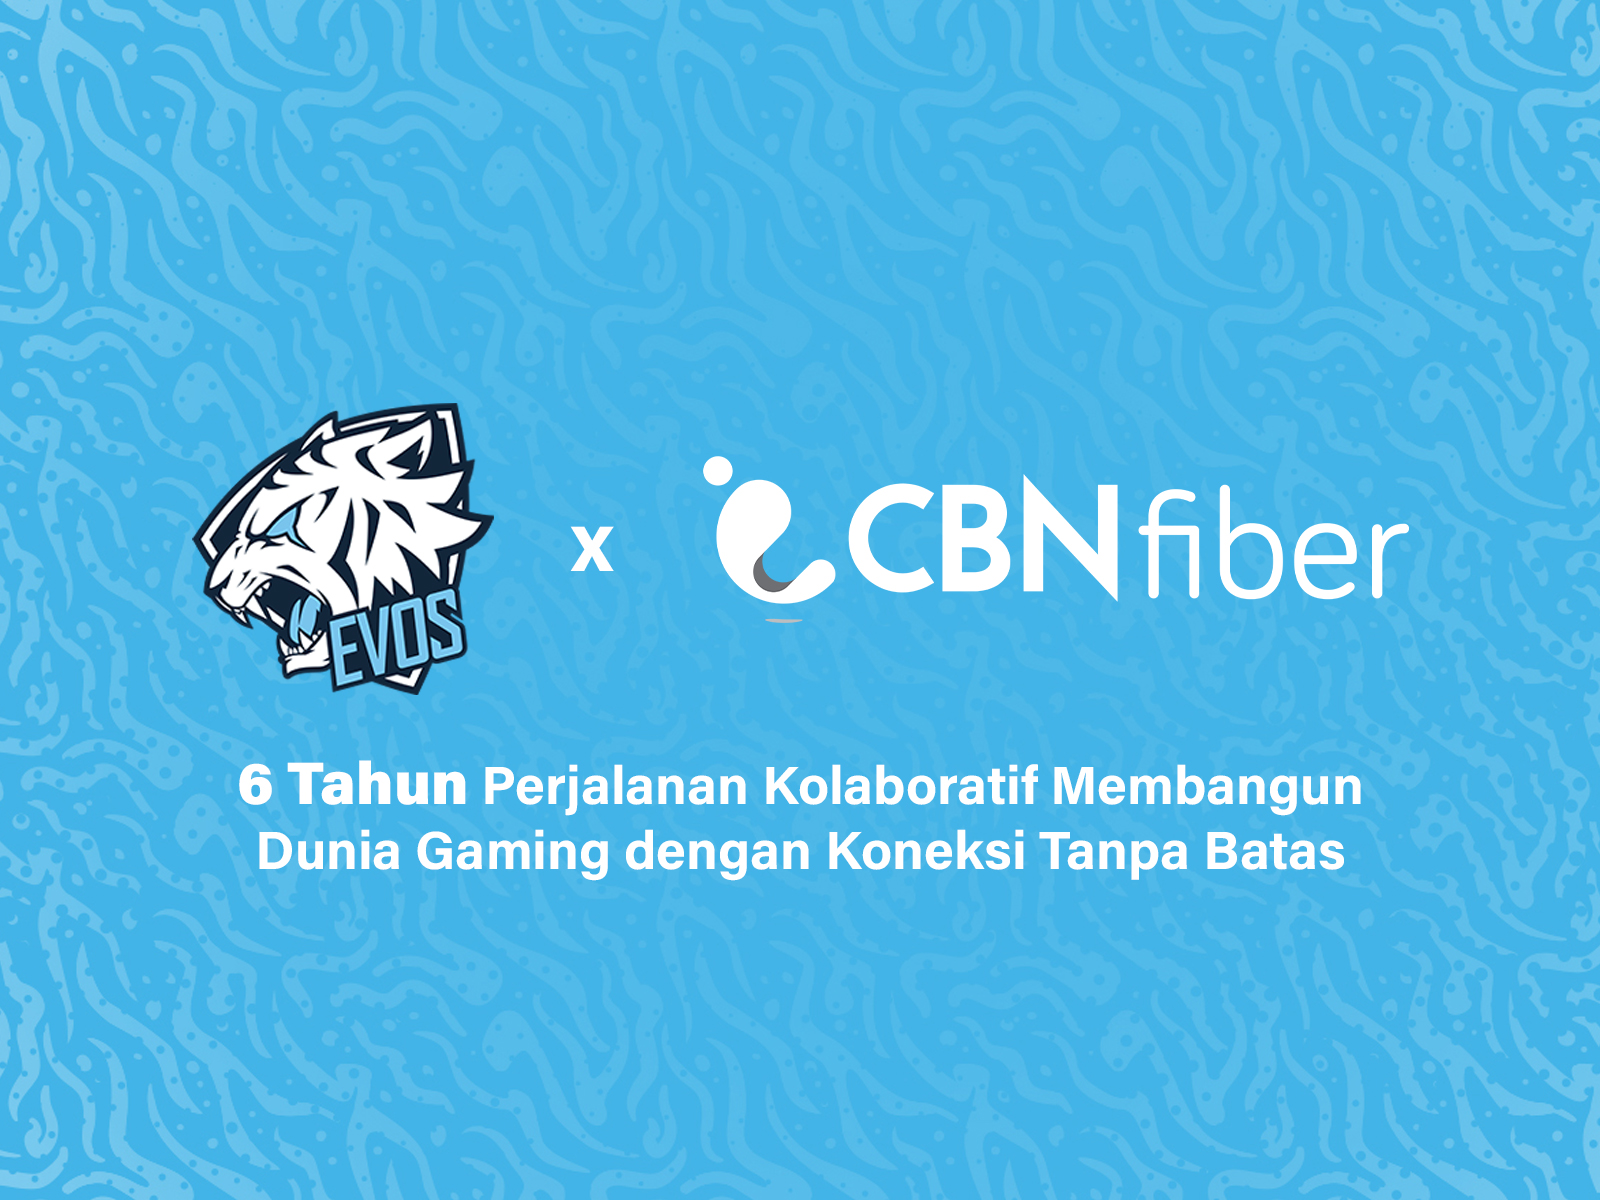 EVOS dan CBN Fiber: 6 Tahun Membangun Koneksi Tanpa Batas di Industri Esports Indonesia